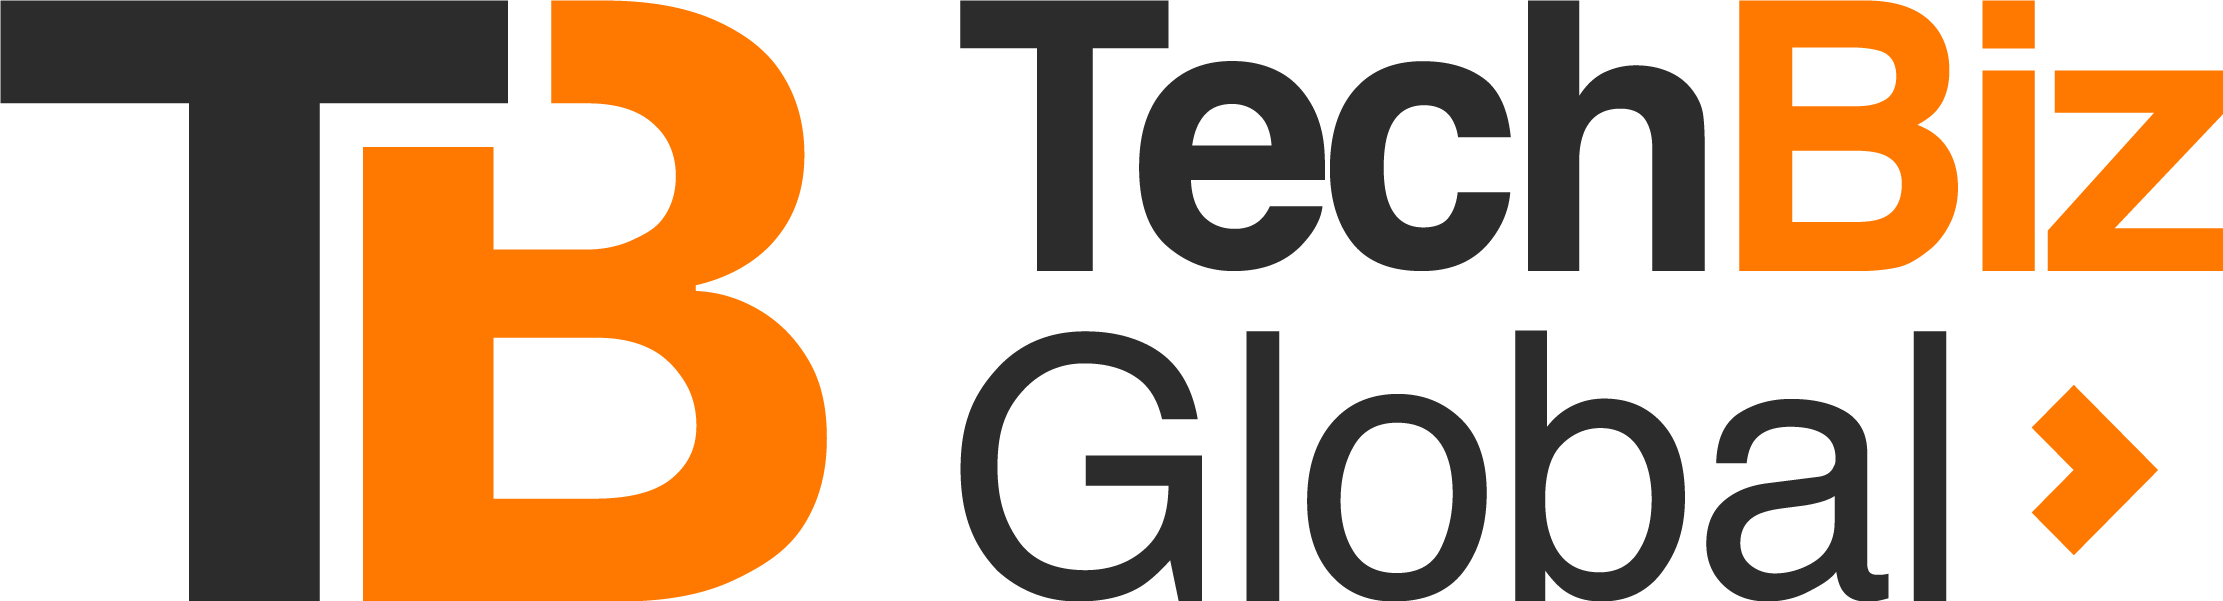 TechBiz Global Logo